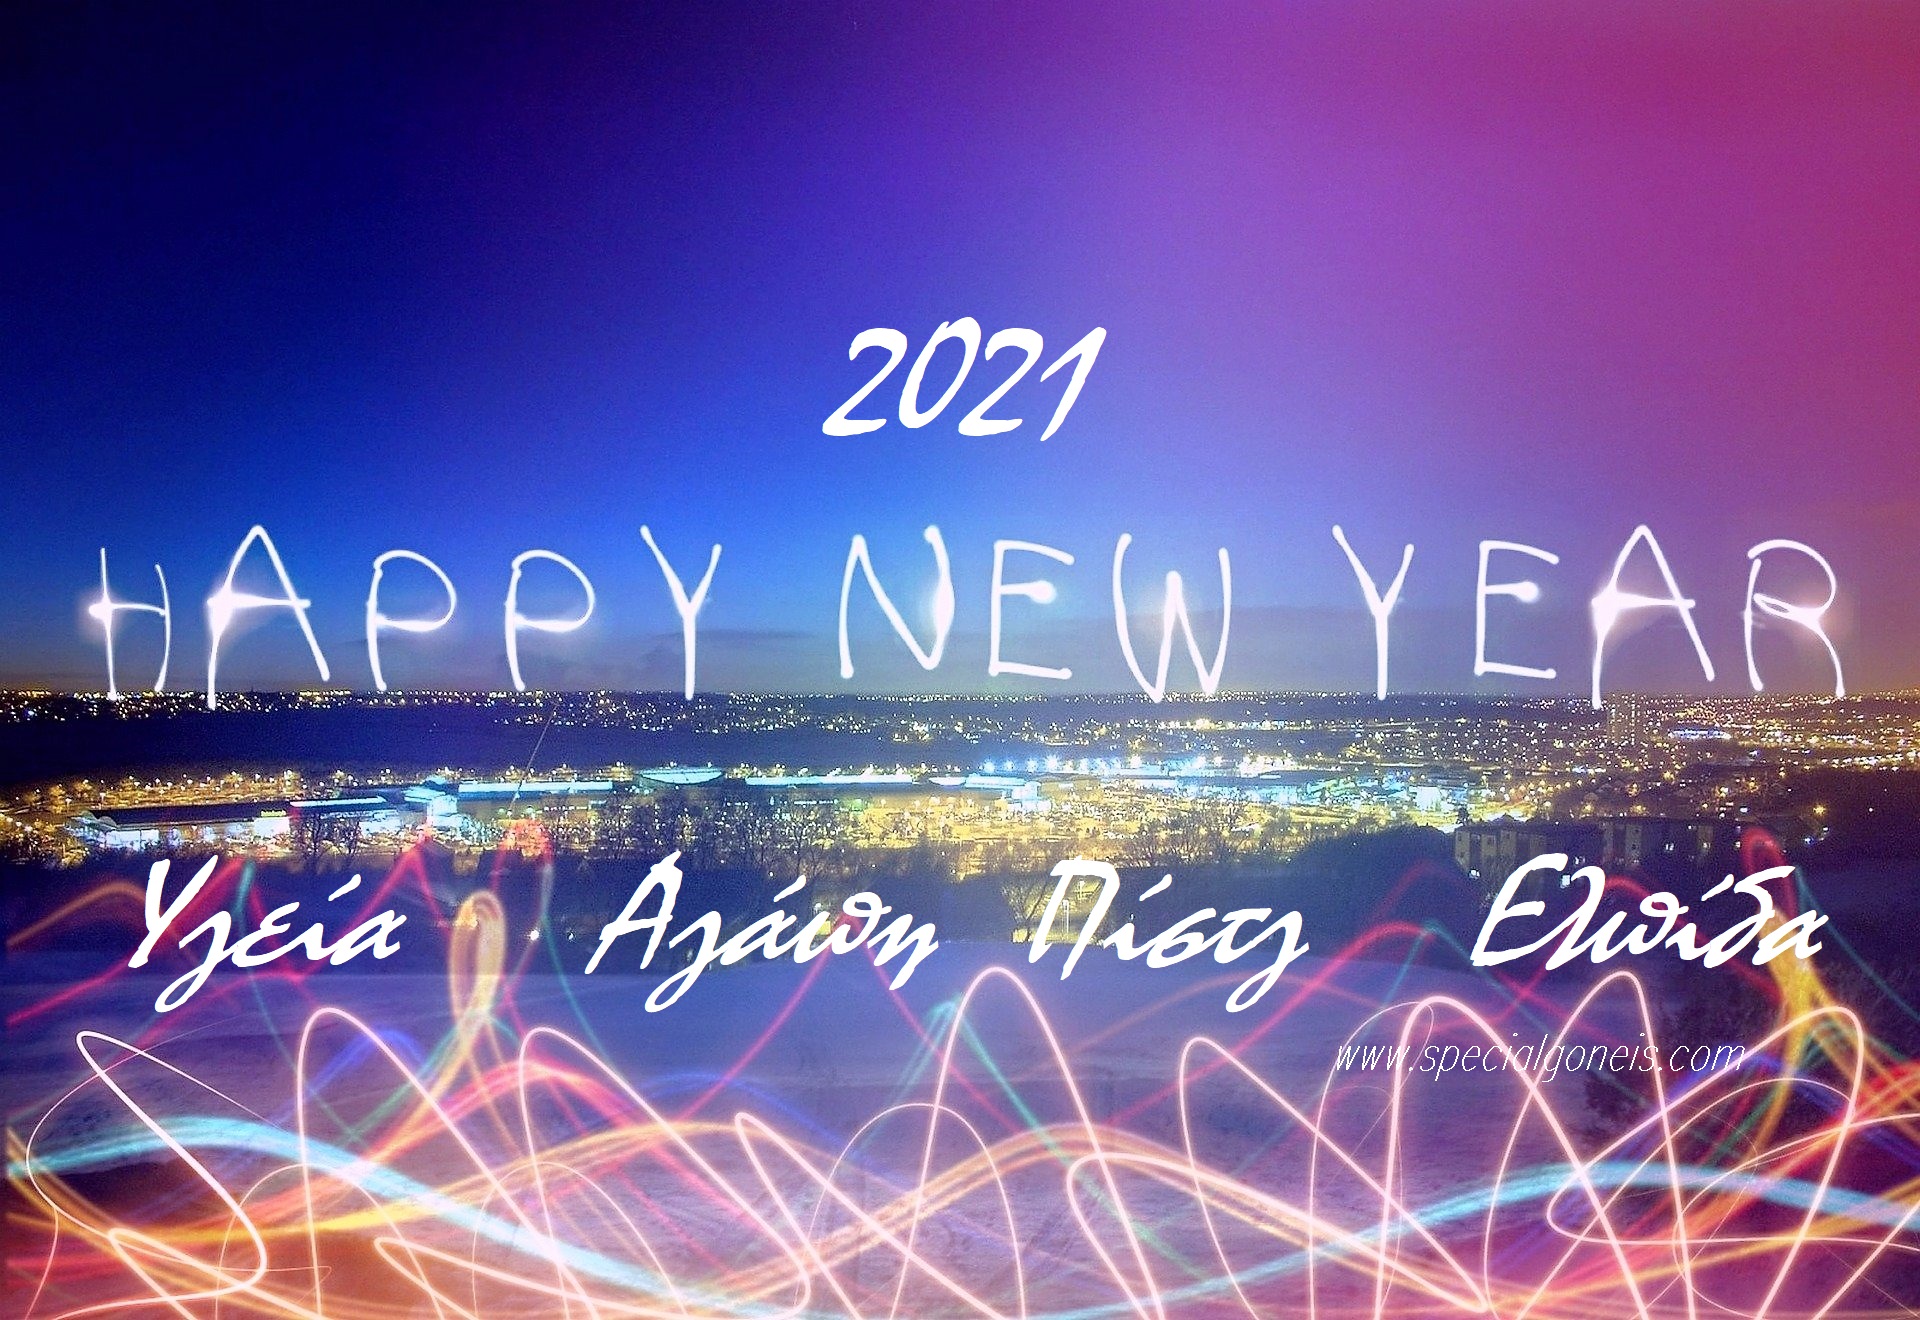 Καλωσορίζοντας με φωτεινές ευχές το 2021! 